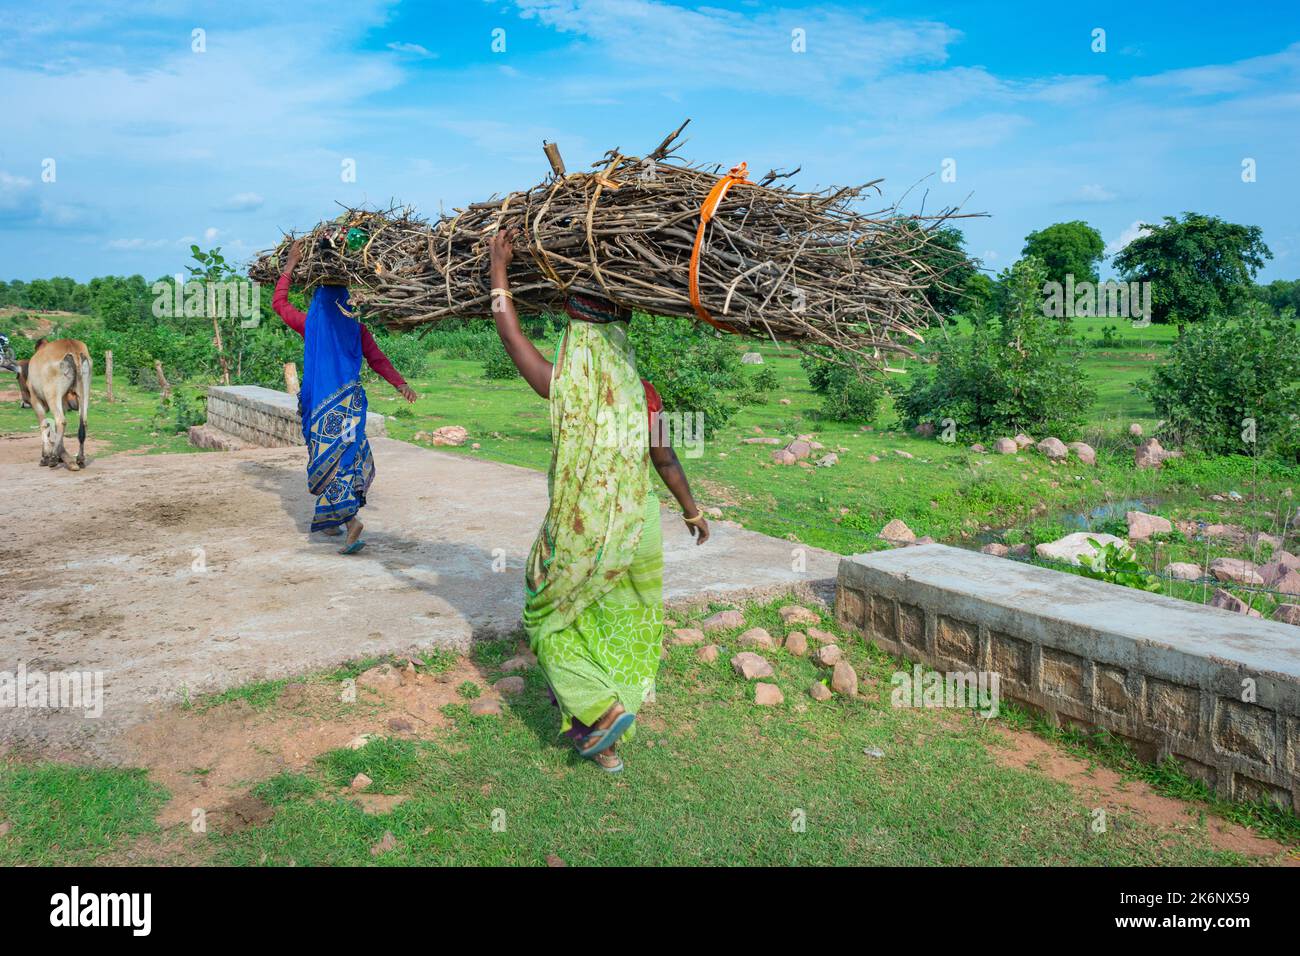 TIKAMGARH, MADHYA PRADESH, INDIA - AUGUST 11, 2022: Women carrying firewood on her head. Stock Photo